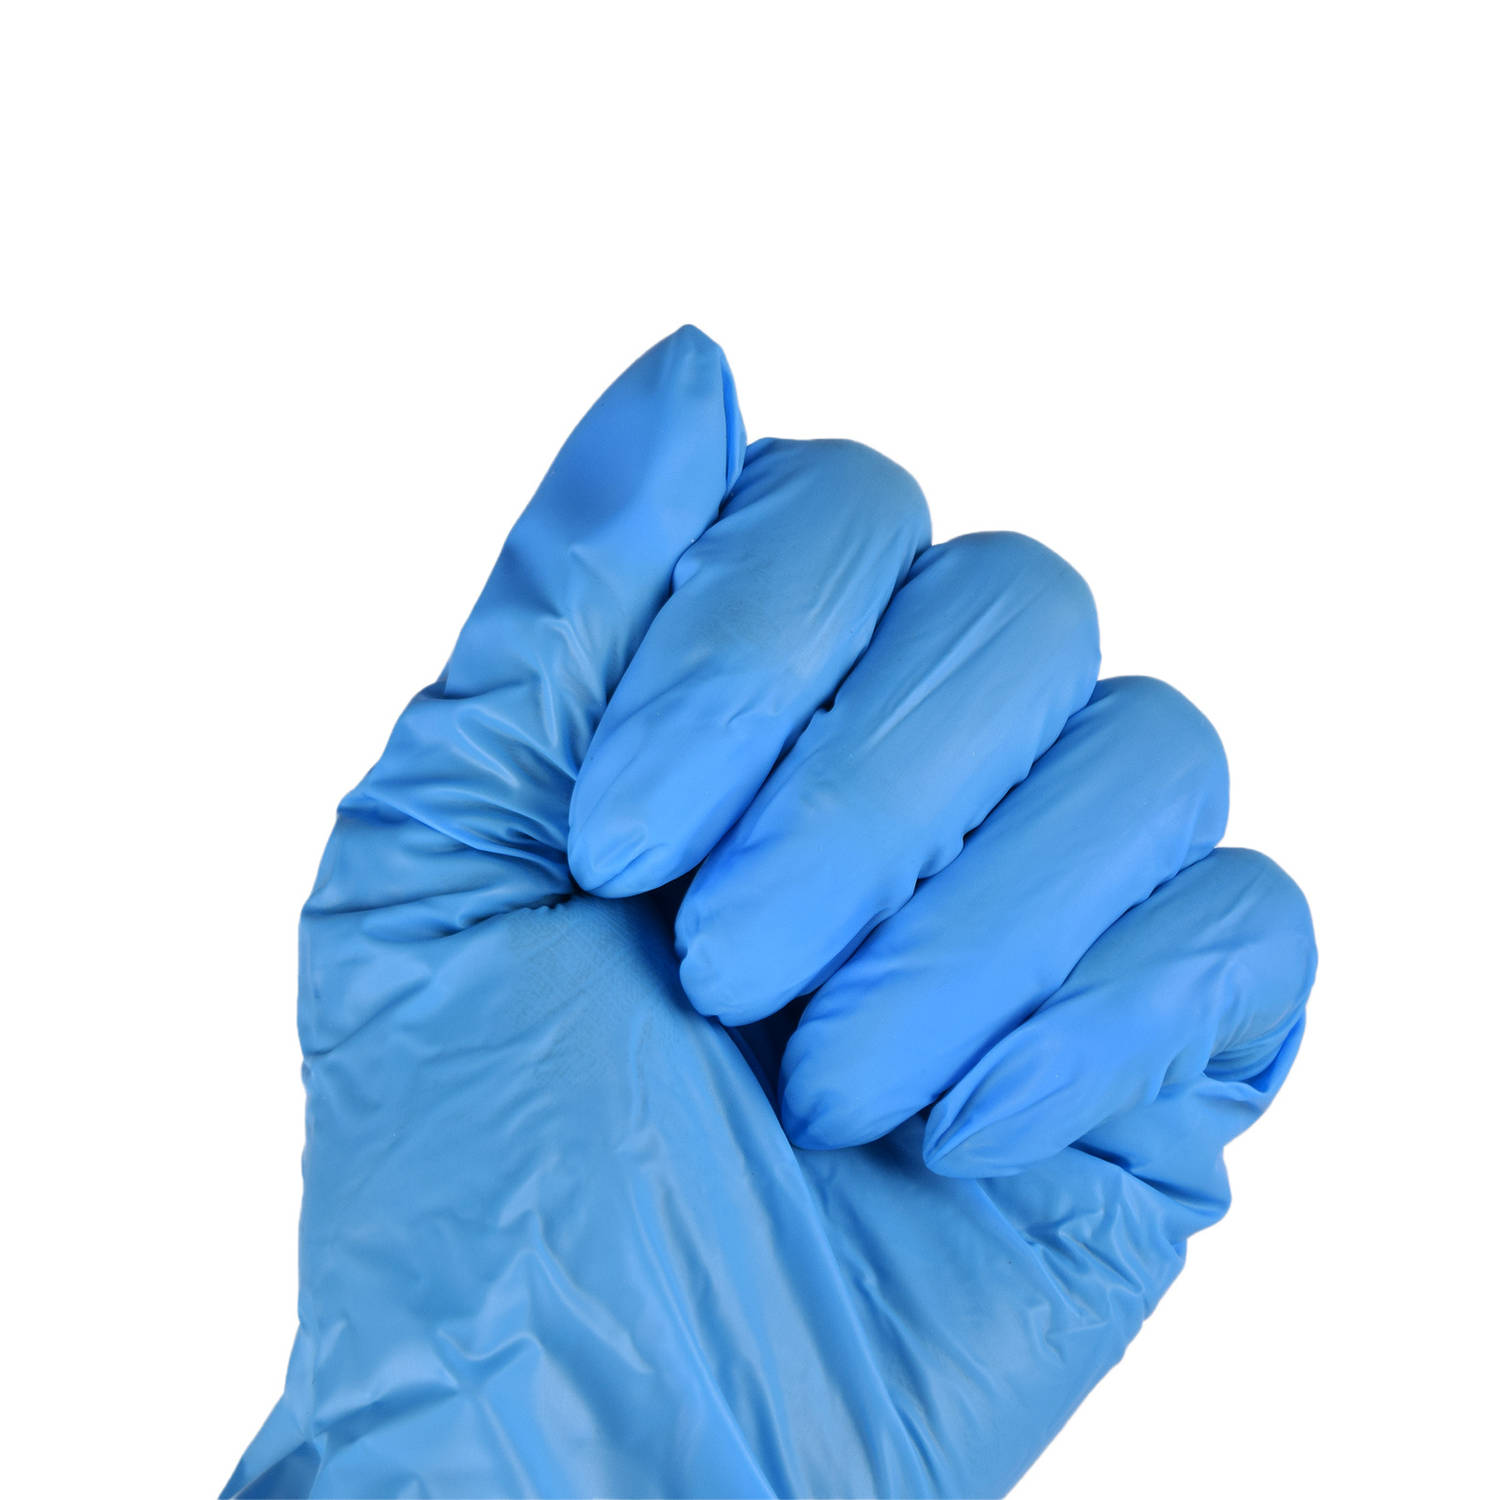 Nitra Force Nitril Wegwerp Handschoenen | Maat S – Latexvrij, Poedervrij & Waterdicht | 100 stuks in Blauw | Geschikt voor Medisch en Huishoudelijk Gebruik